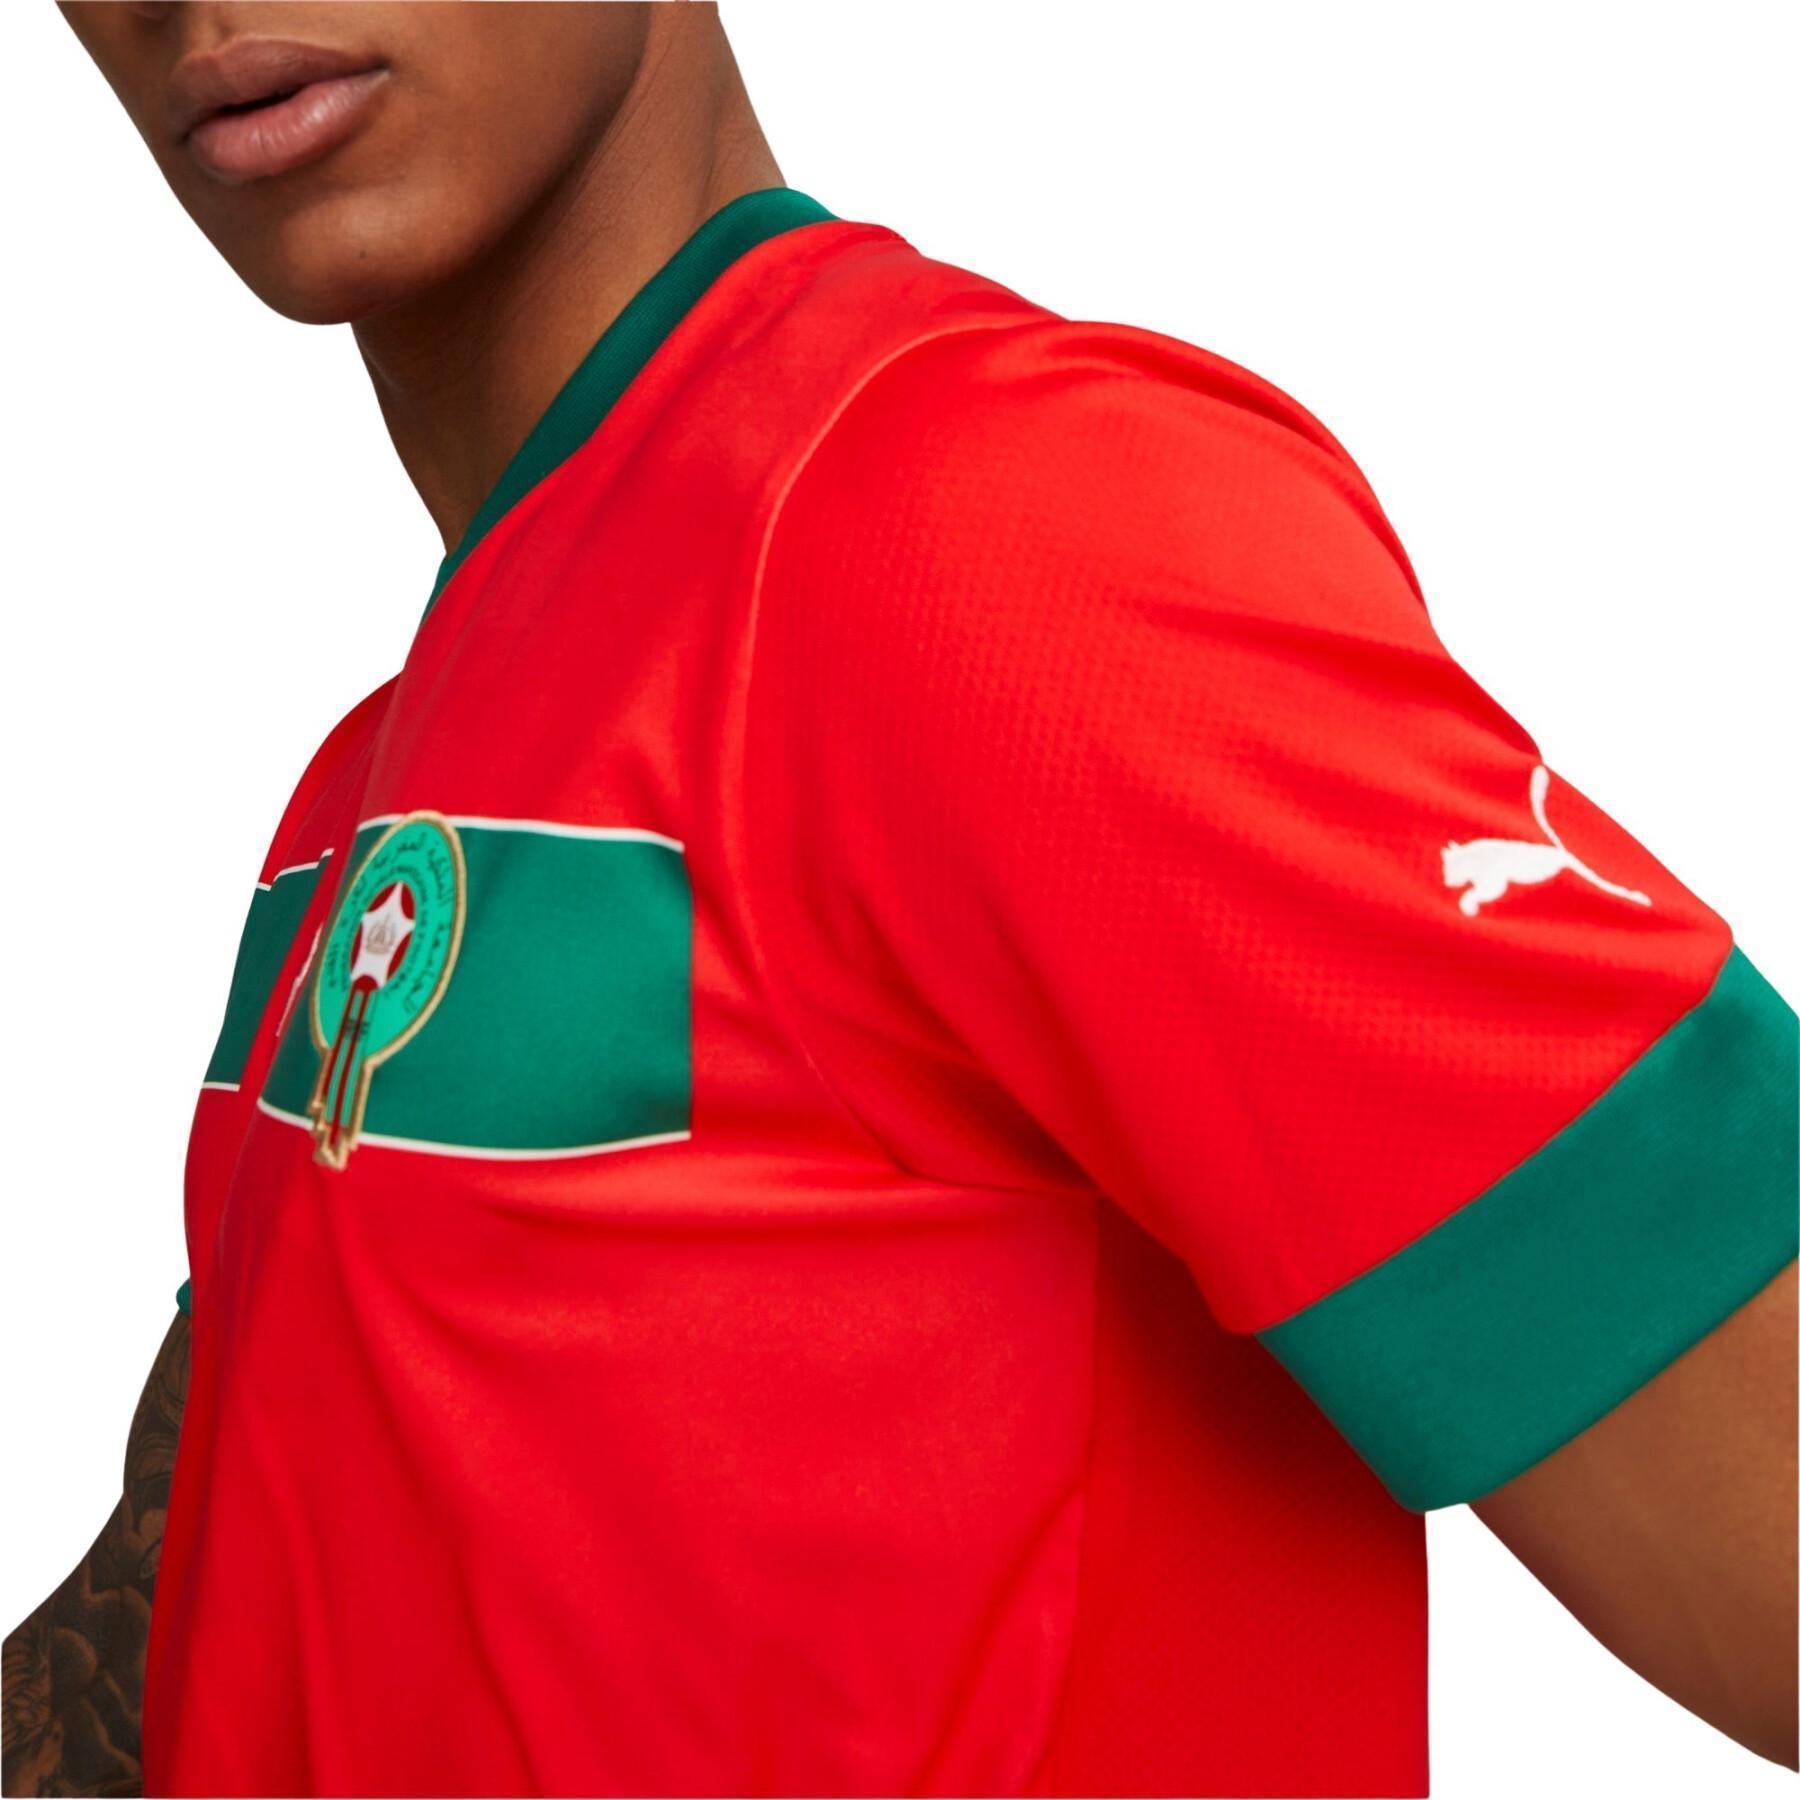 Camiseta primera equipación Maroc CAN 2023